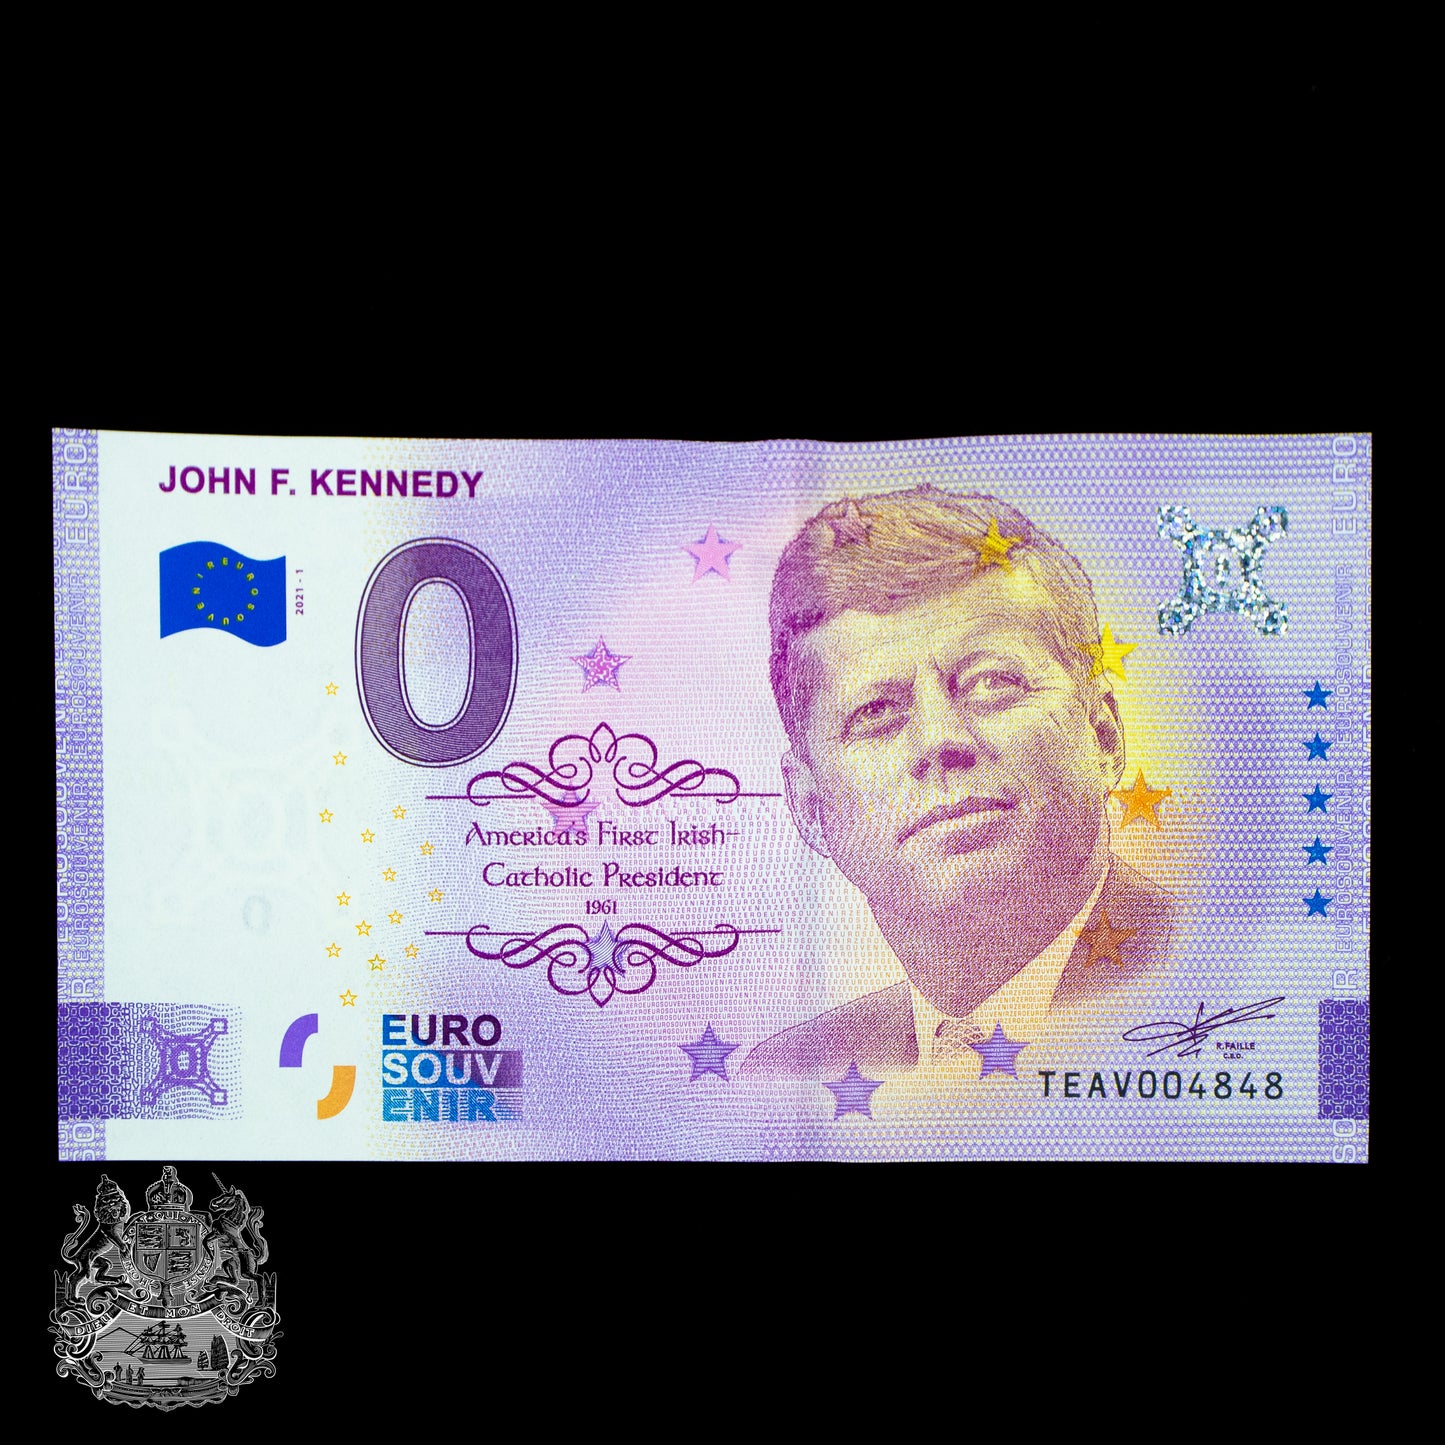 €0 John F. Kennedy